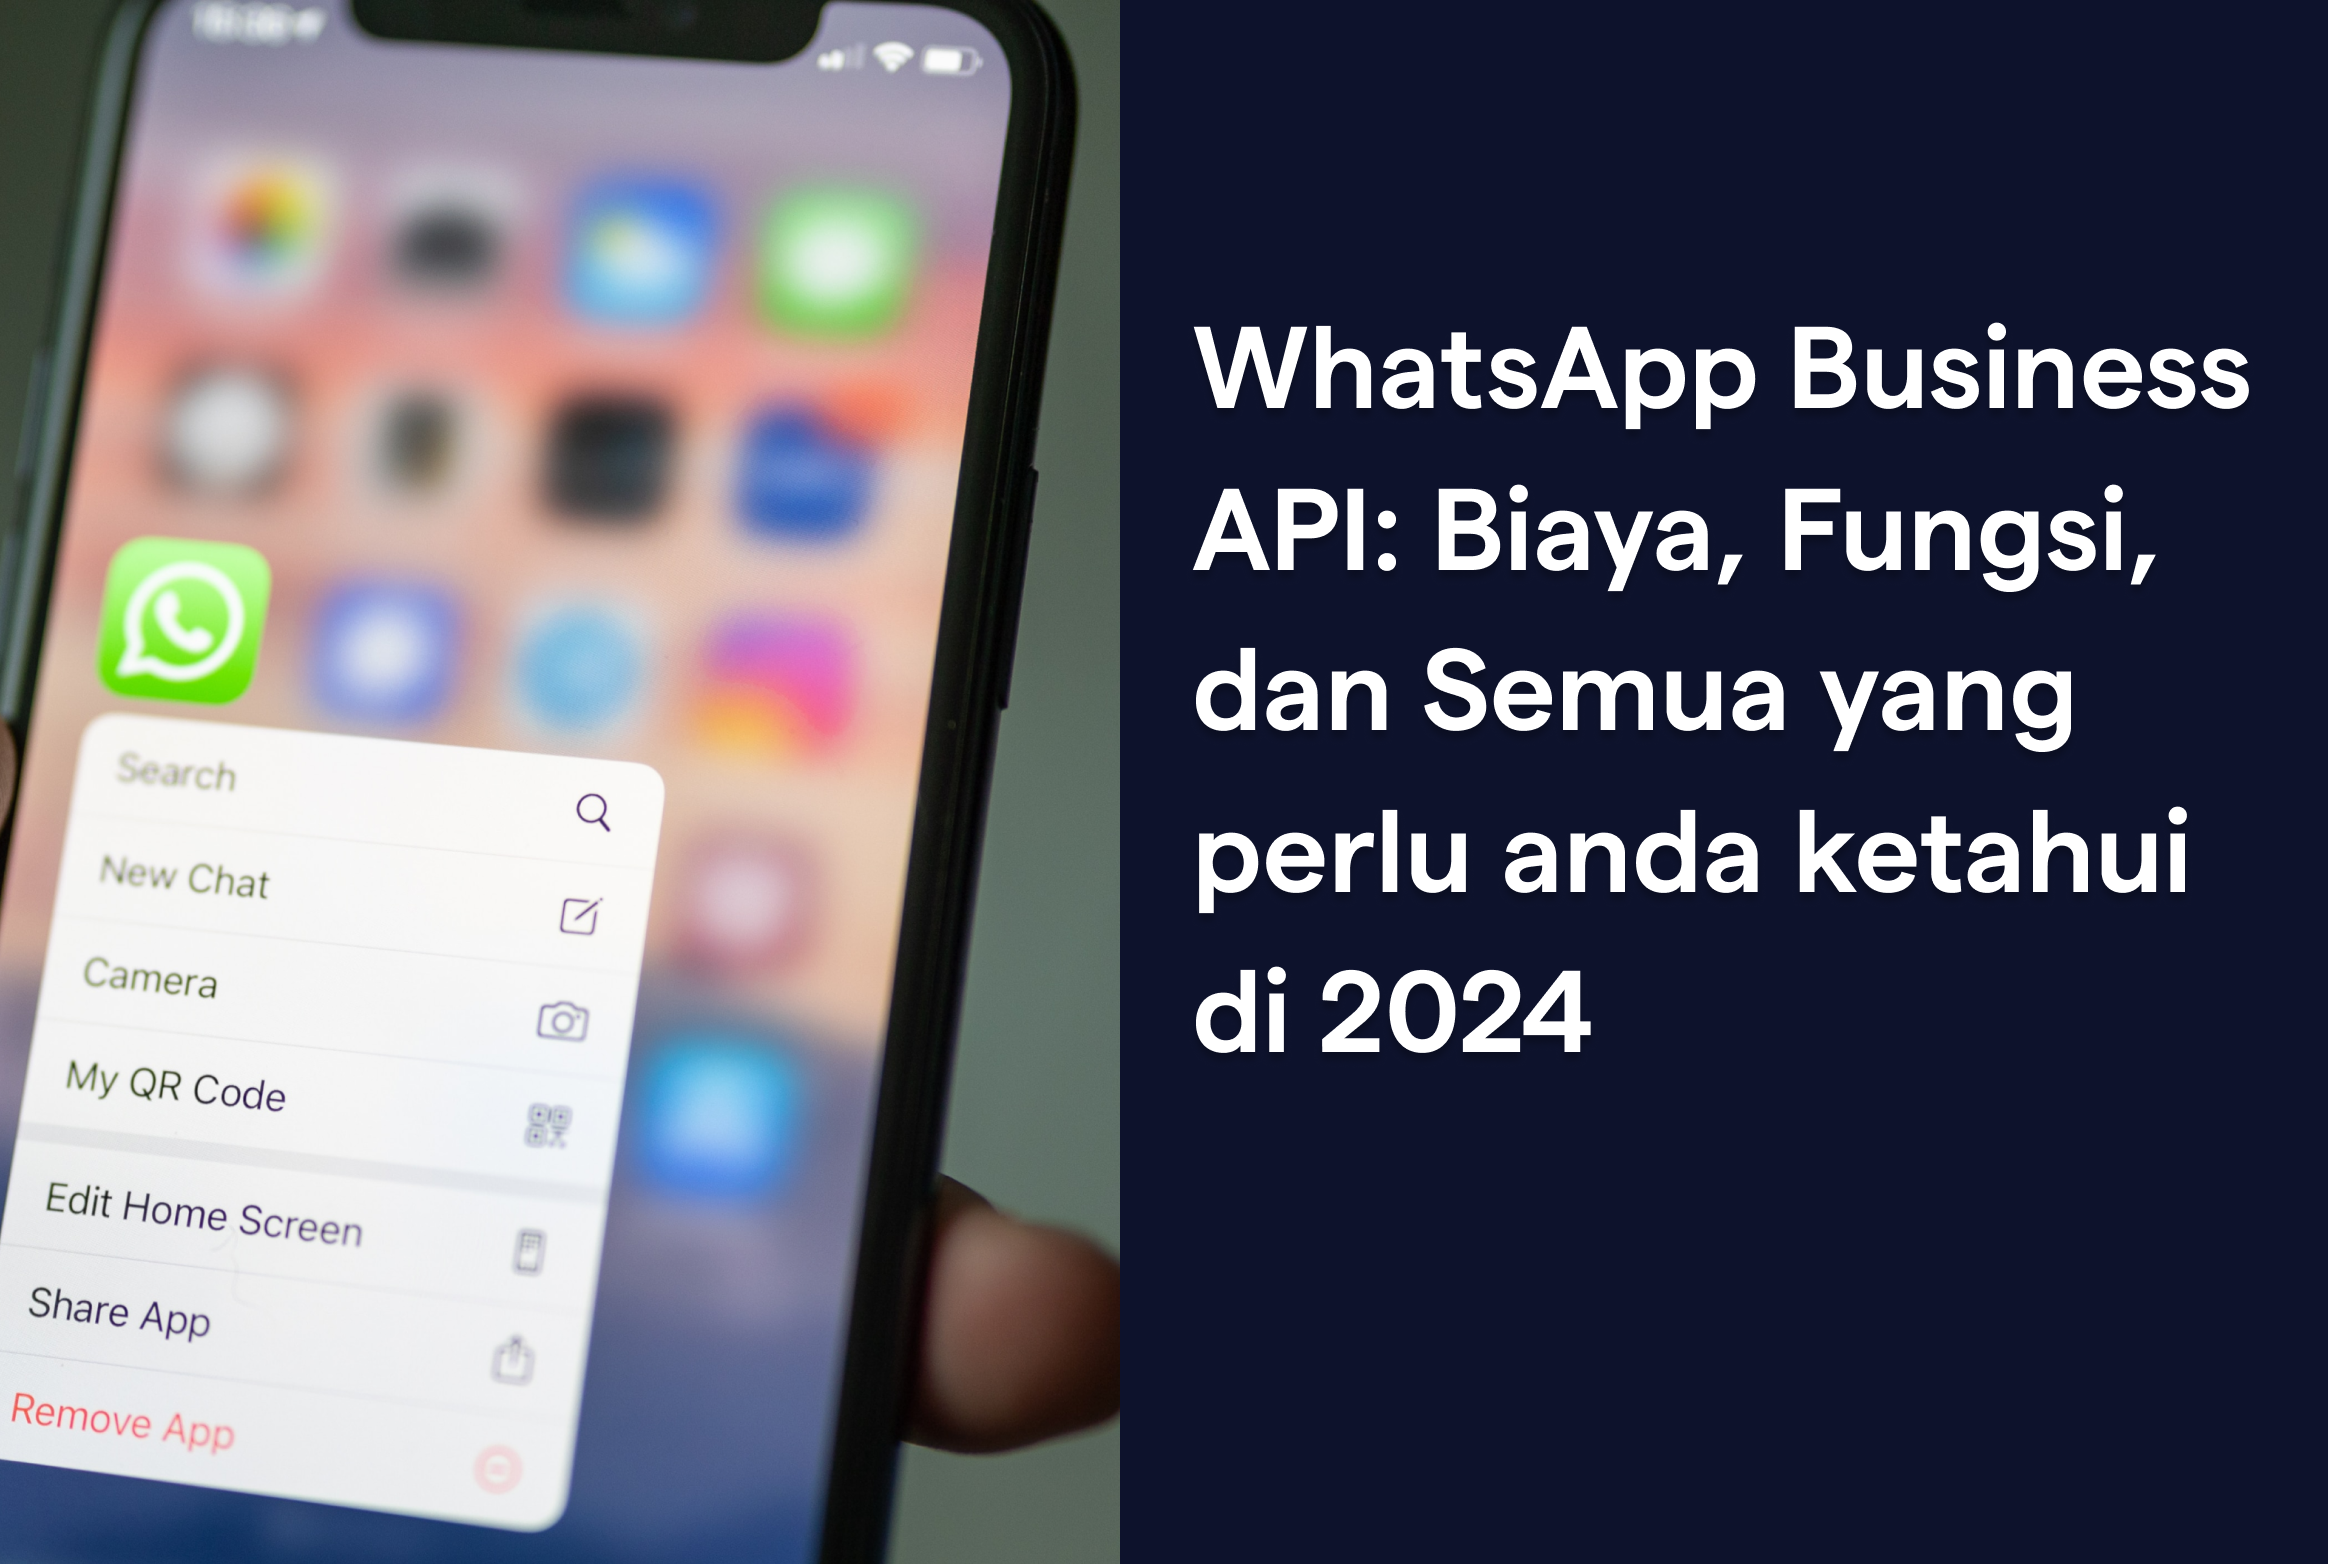 WhatsApp Business API: biaya, fungsi, dan semua yang perlu Anda ketahui pada 2024